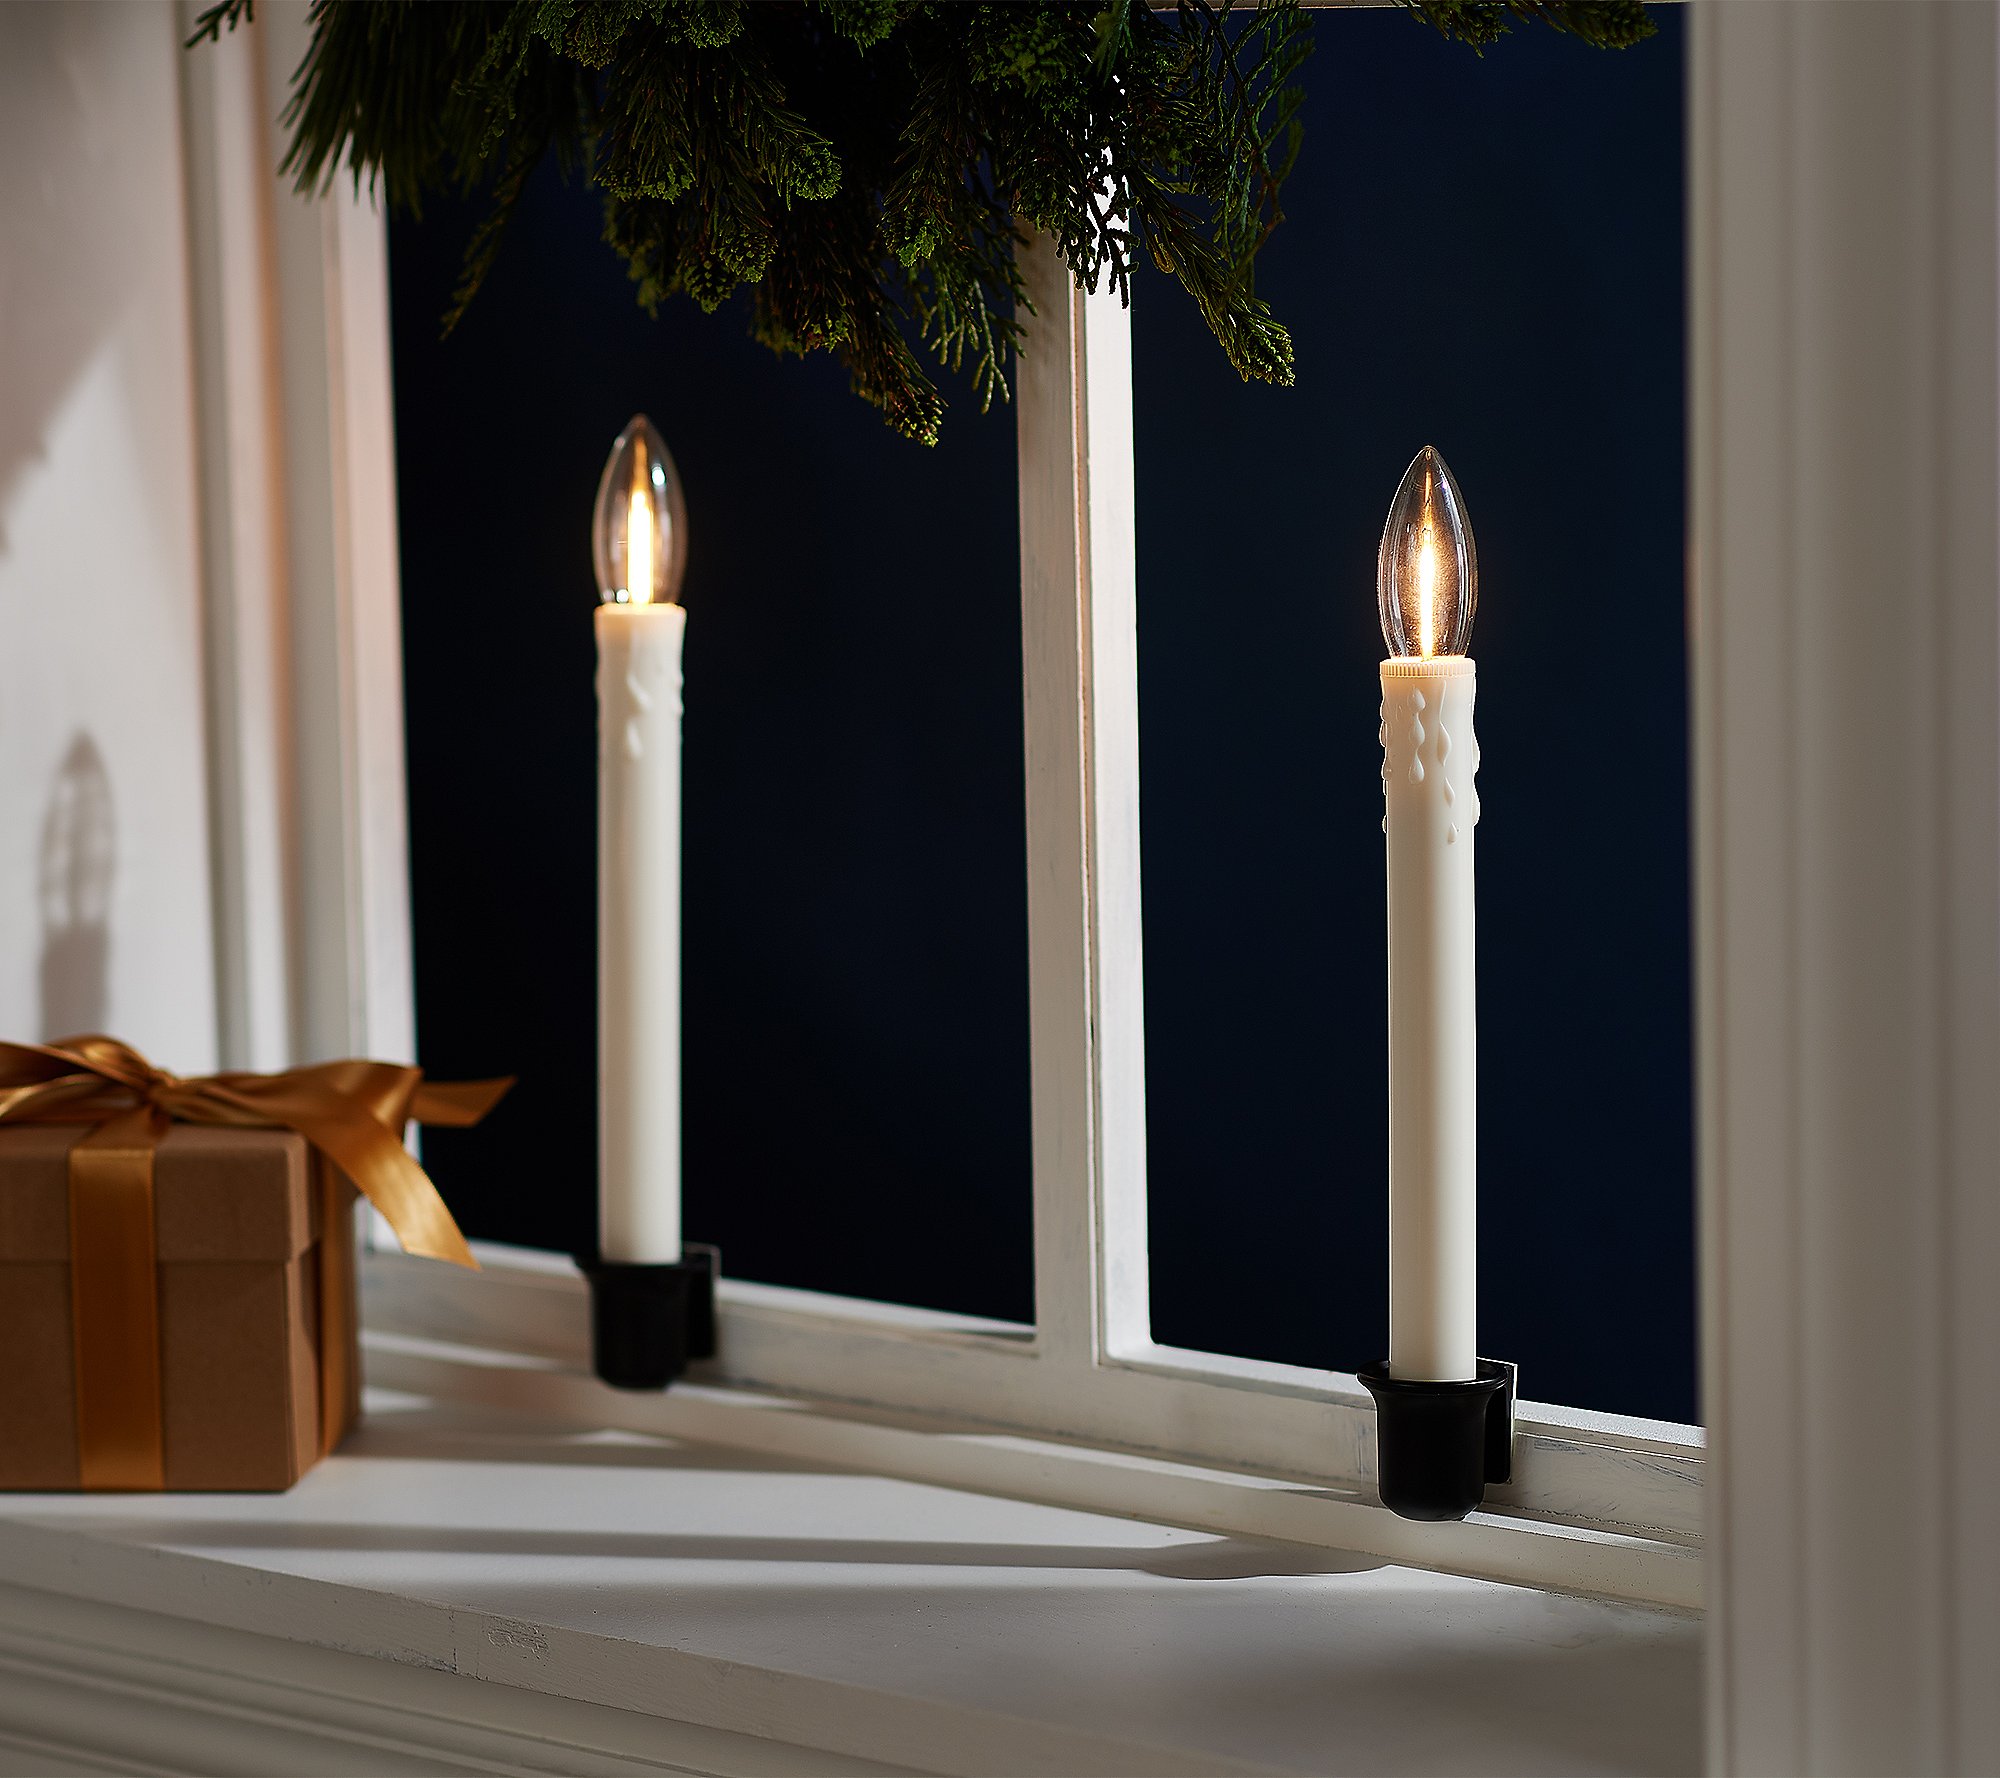 Bethlehem Lights S/2 Cordless Window Candles w/ Adhesive Base